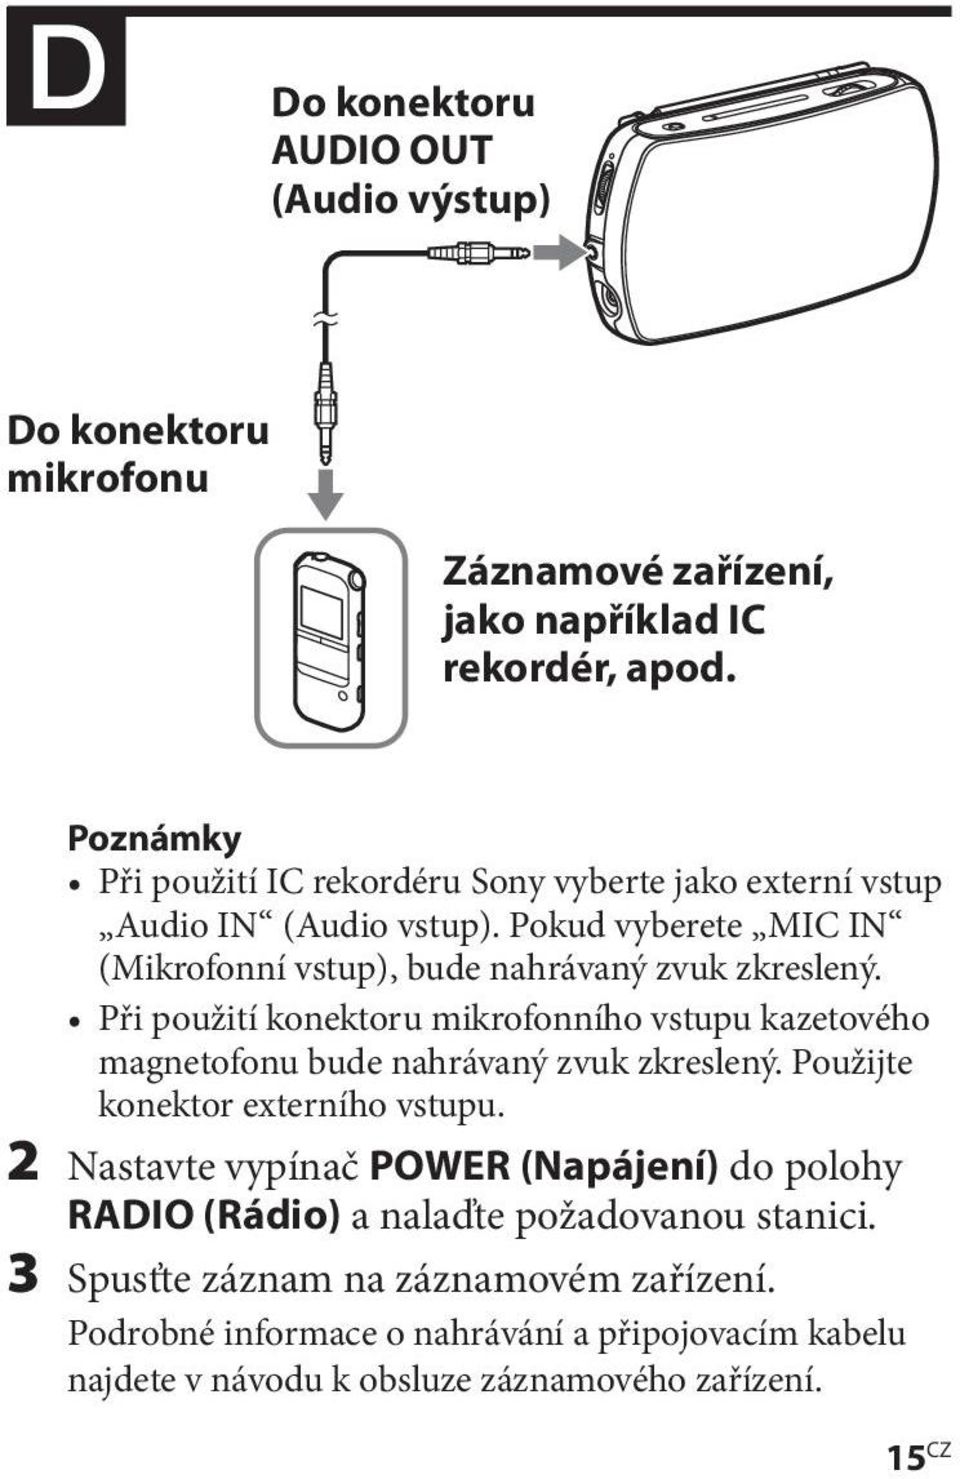 Při použití konektoru mikrofonního vstupu kazetového magnetofonu bude nahrávaný zvuk zkreslený. Použijte konektor externího vstupu.